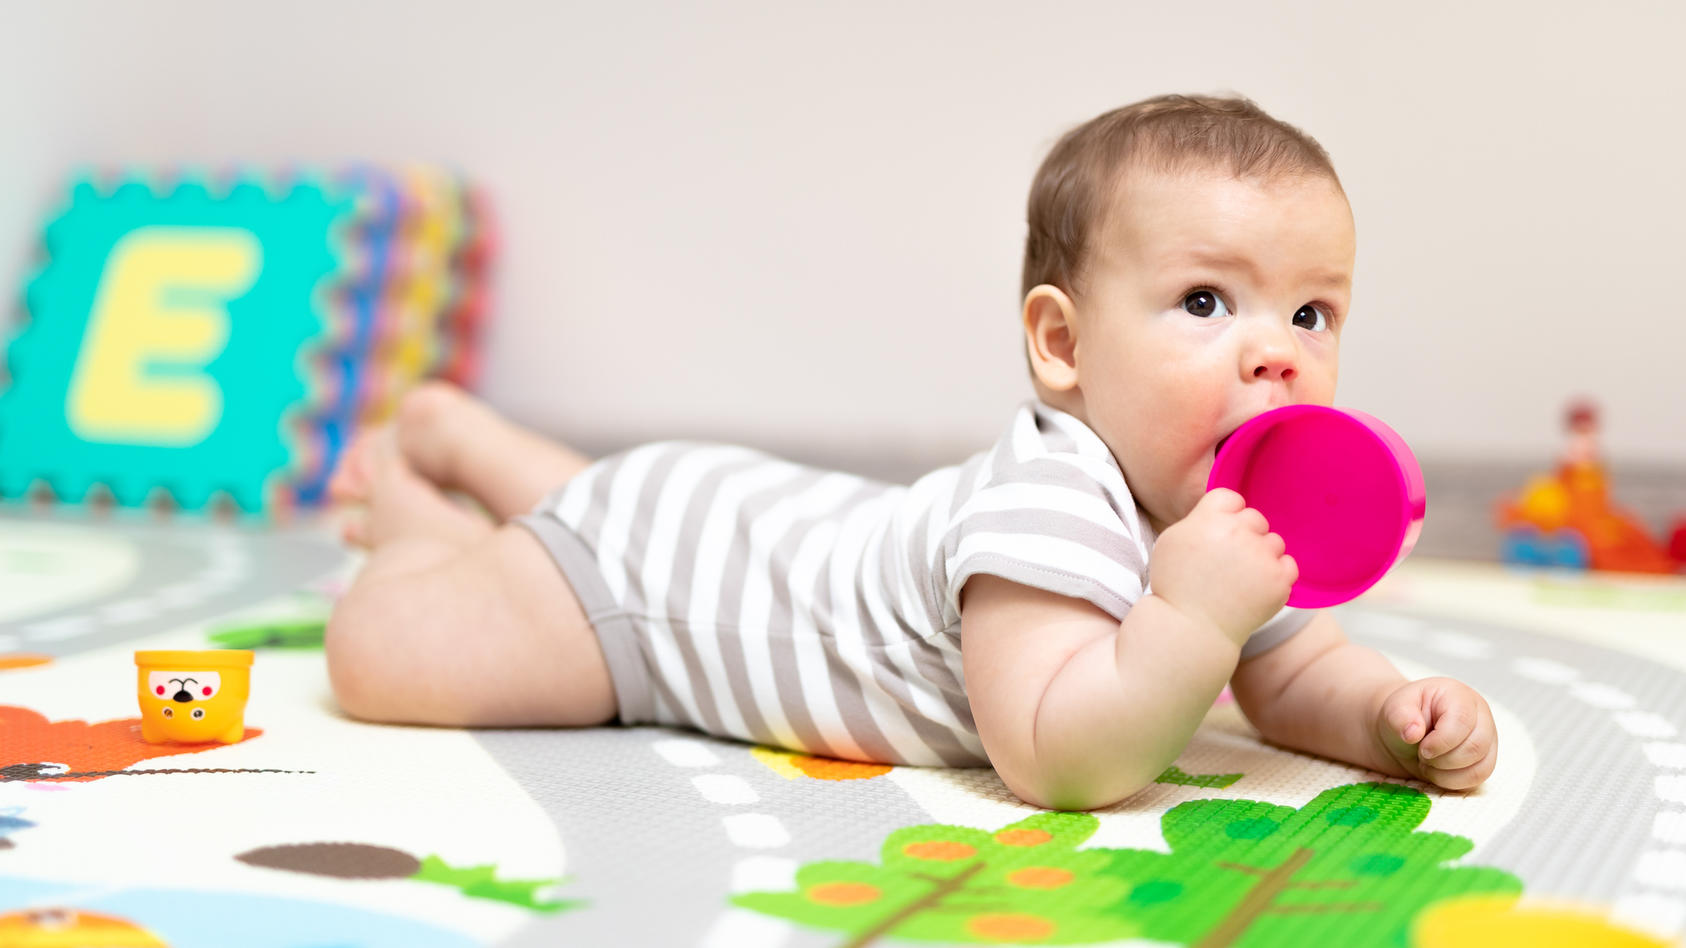 Viele Eltern haben schon einmal von der oralen Phase bei Kleinkindern gehört. Doch was steckt genau dahinter, wenn das Baby plötzlich alles in den Mund nimmt?